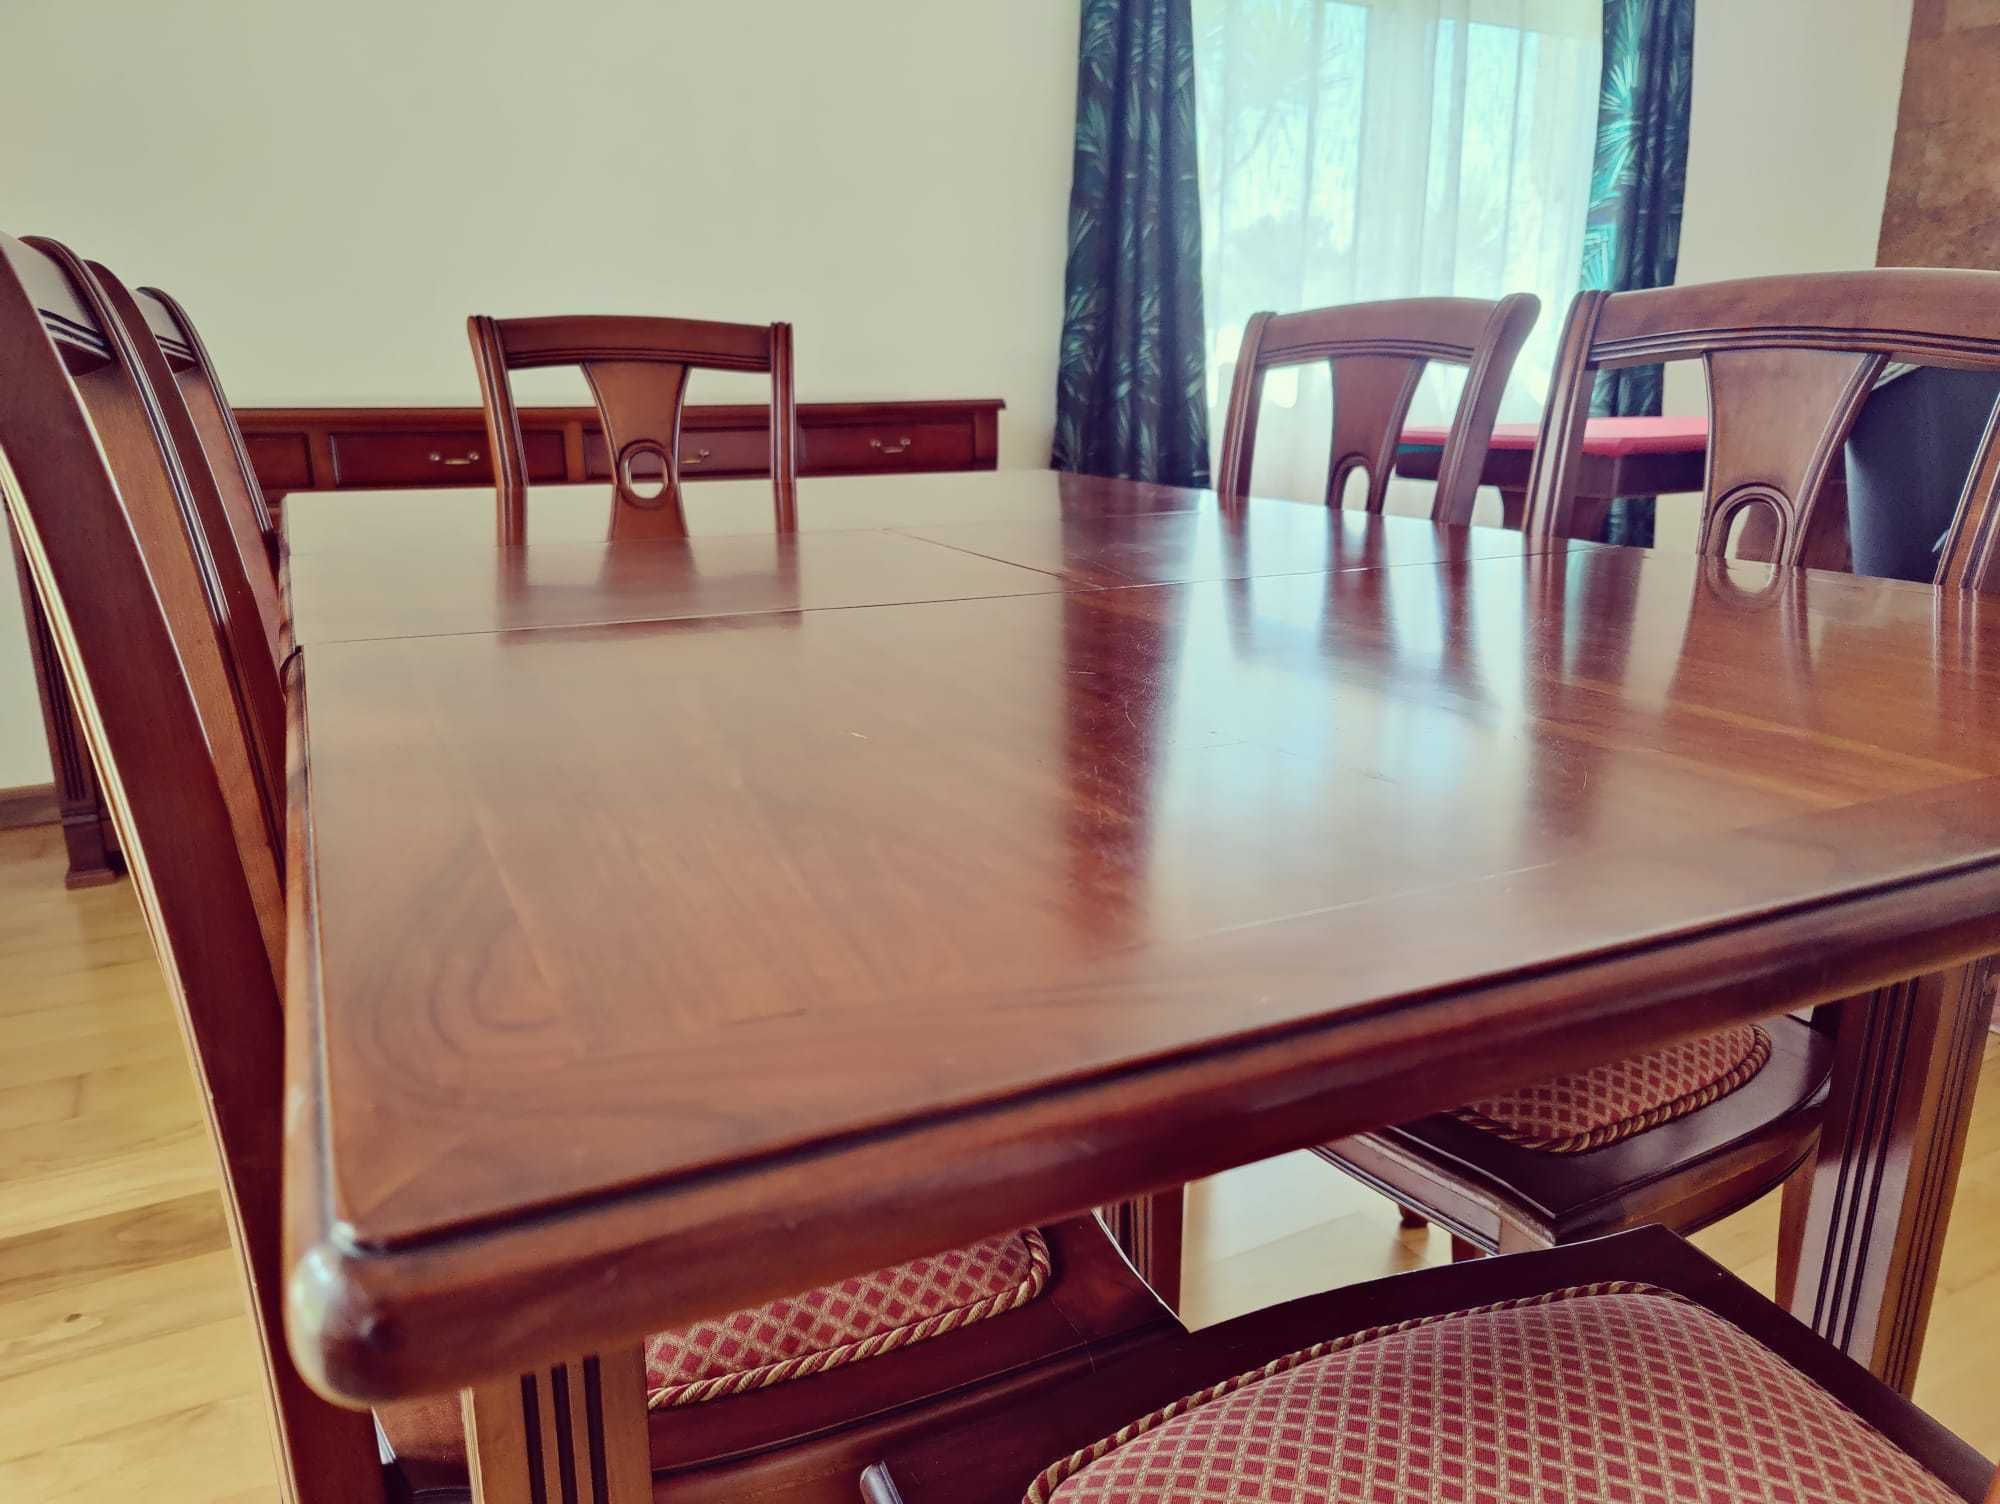 Mesa de Jantar com Cadeiras - Estilo Clássico/Antigo/Rústico